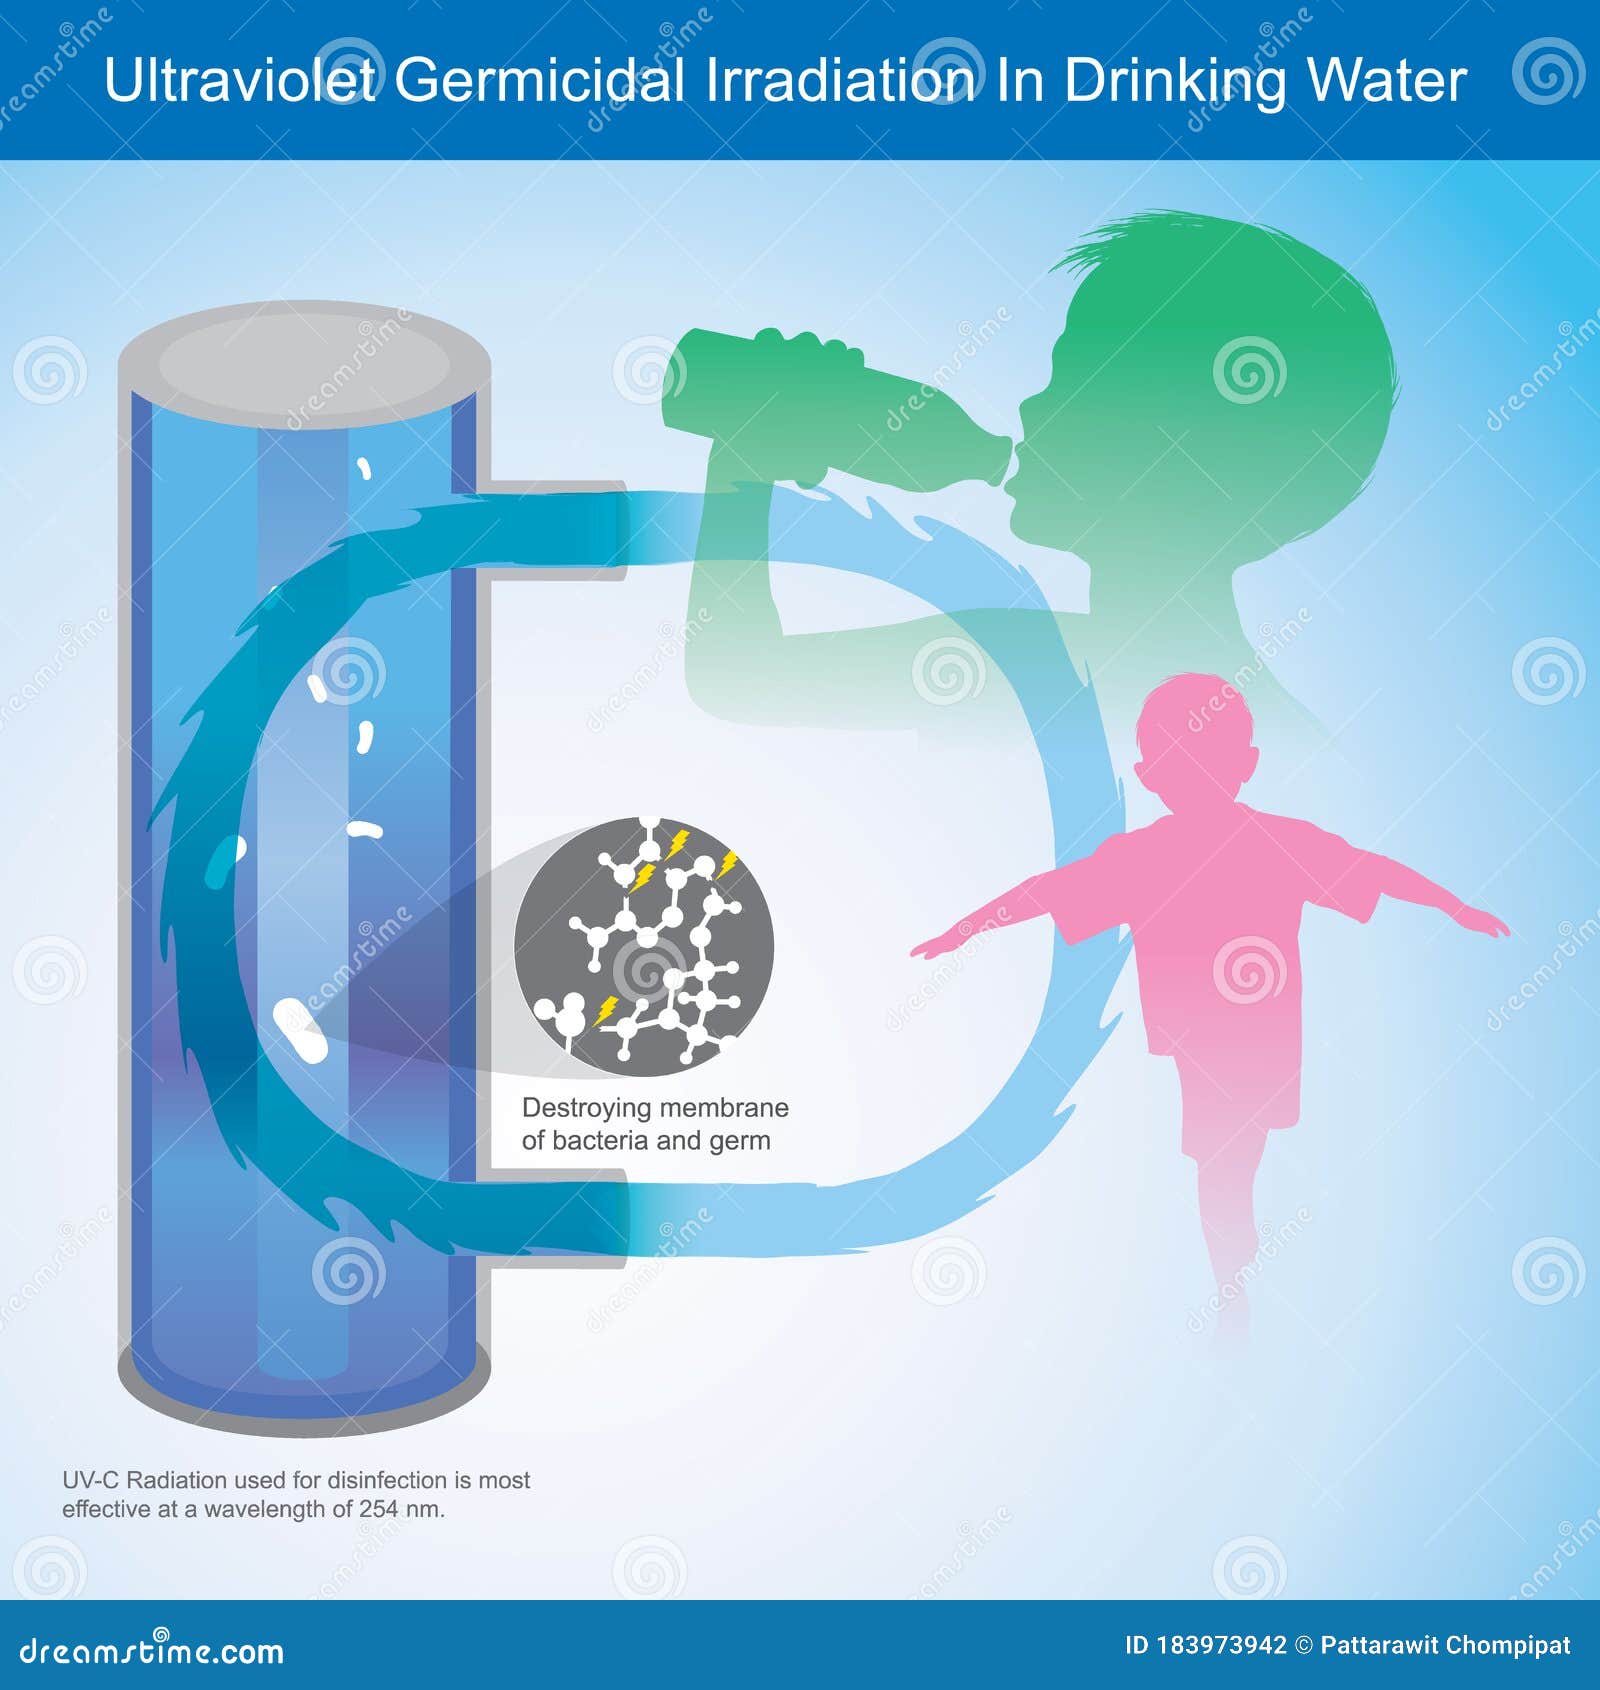 ultraviolet germicidal irradiation in drinking water.  explain ultraviolet light uv-c